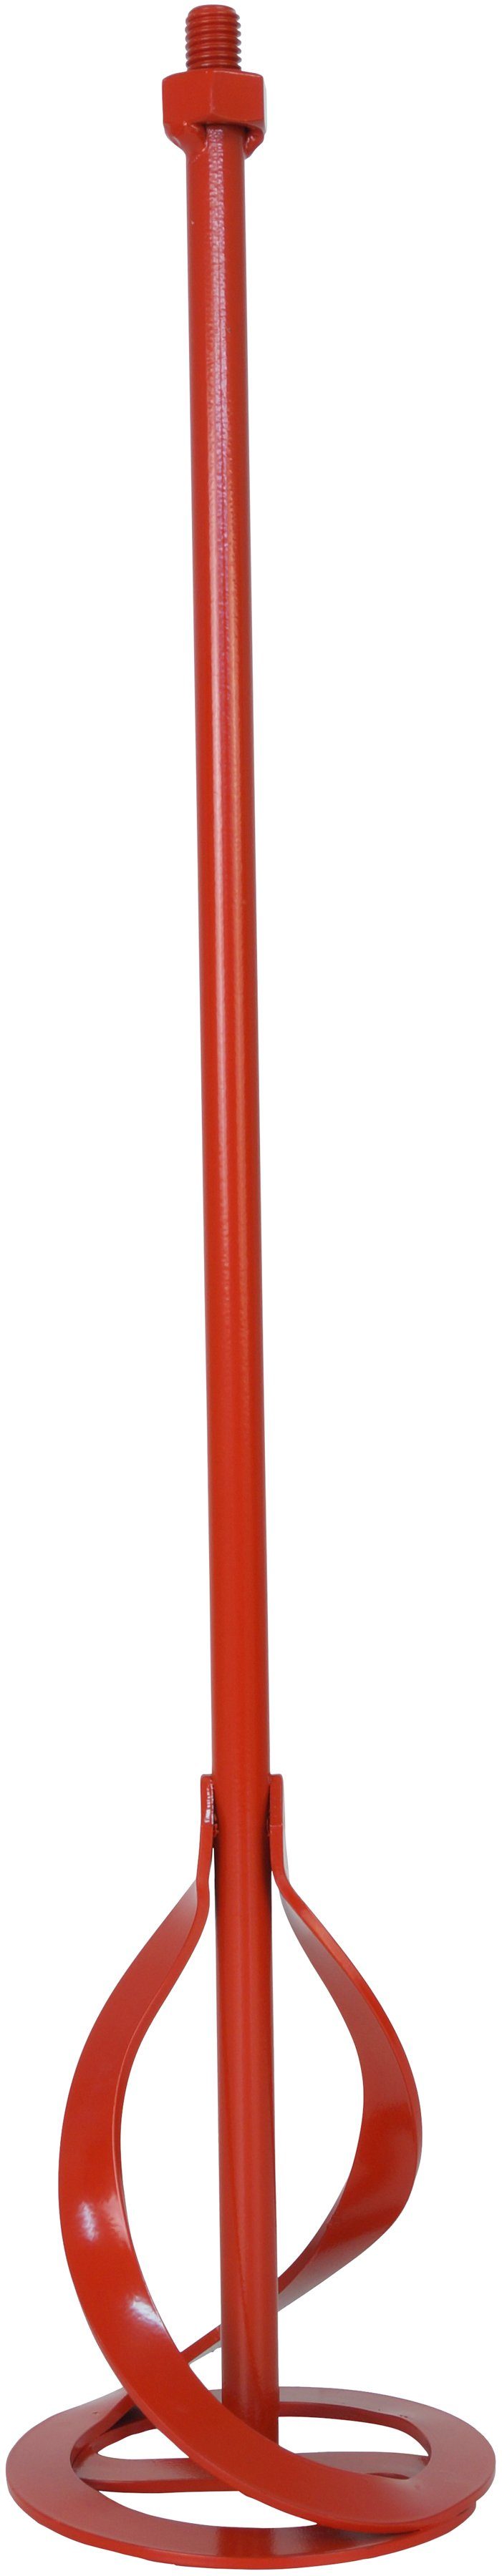 Connex Rührquirl M14 Werkzeugaufnahme - Geeignet für Wand- & Deckenfarben ; Rührkorb, L: 62 cm, Mischgut bis 30 kg - Für handelsübliche Rührwerke